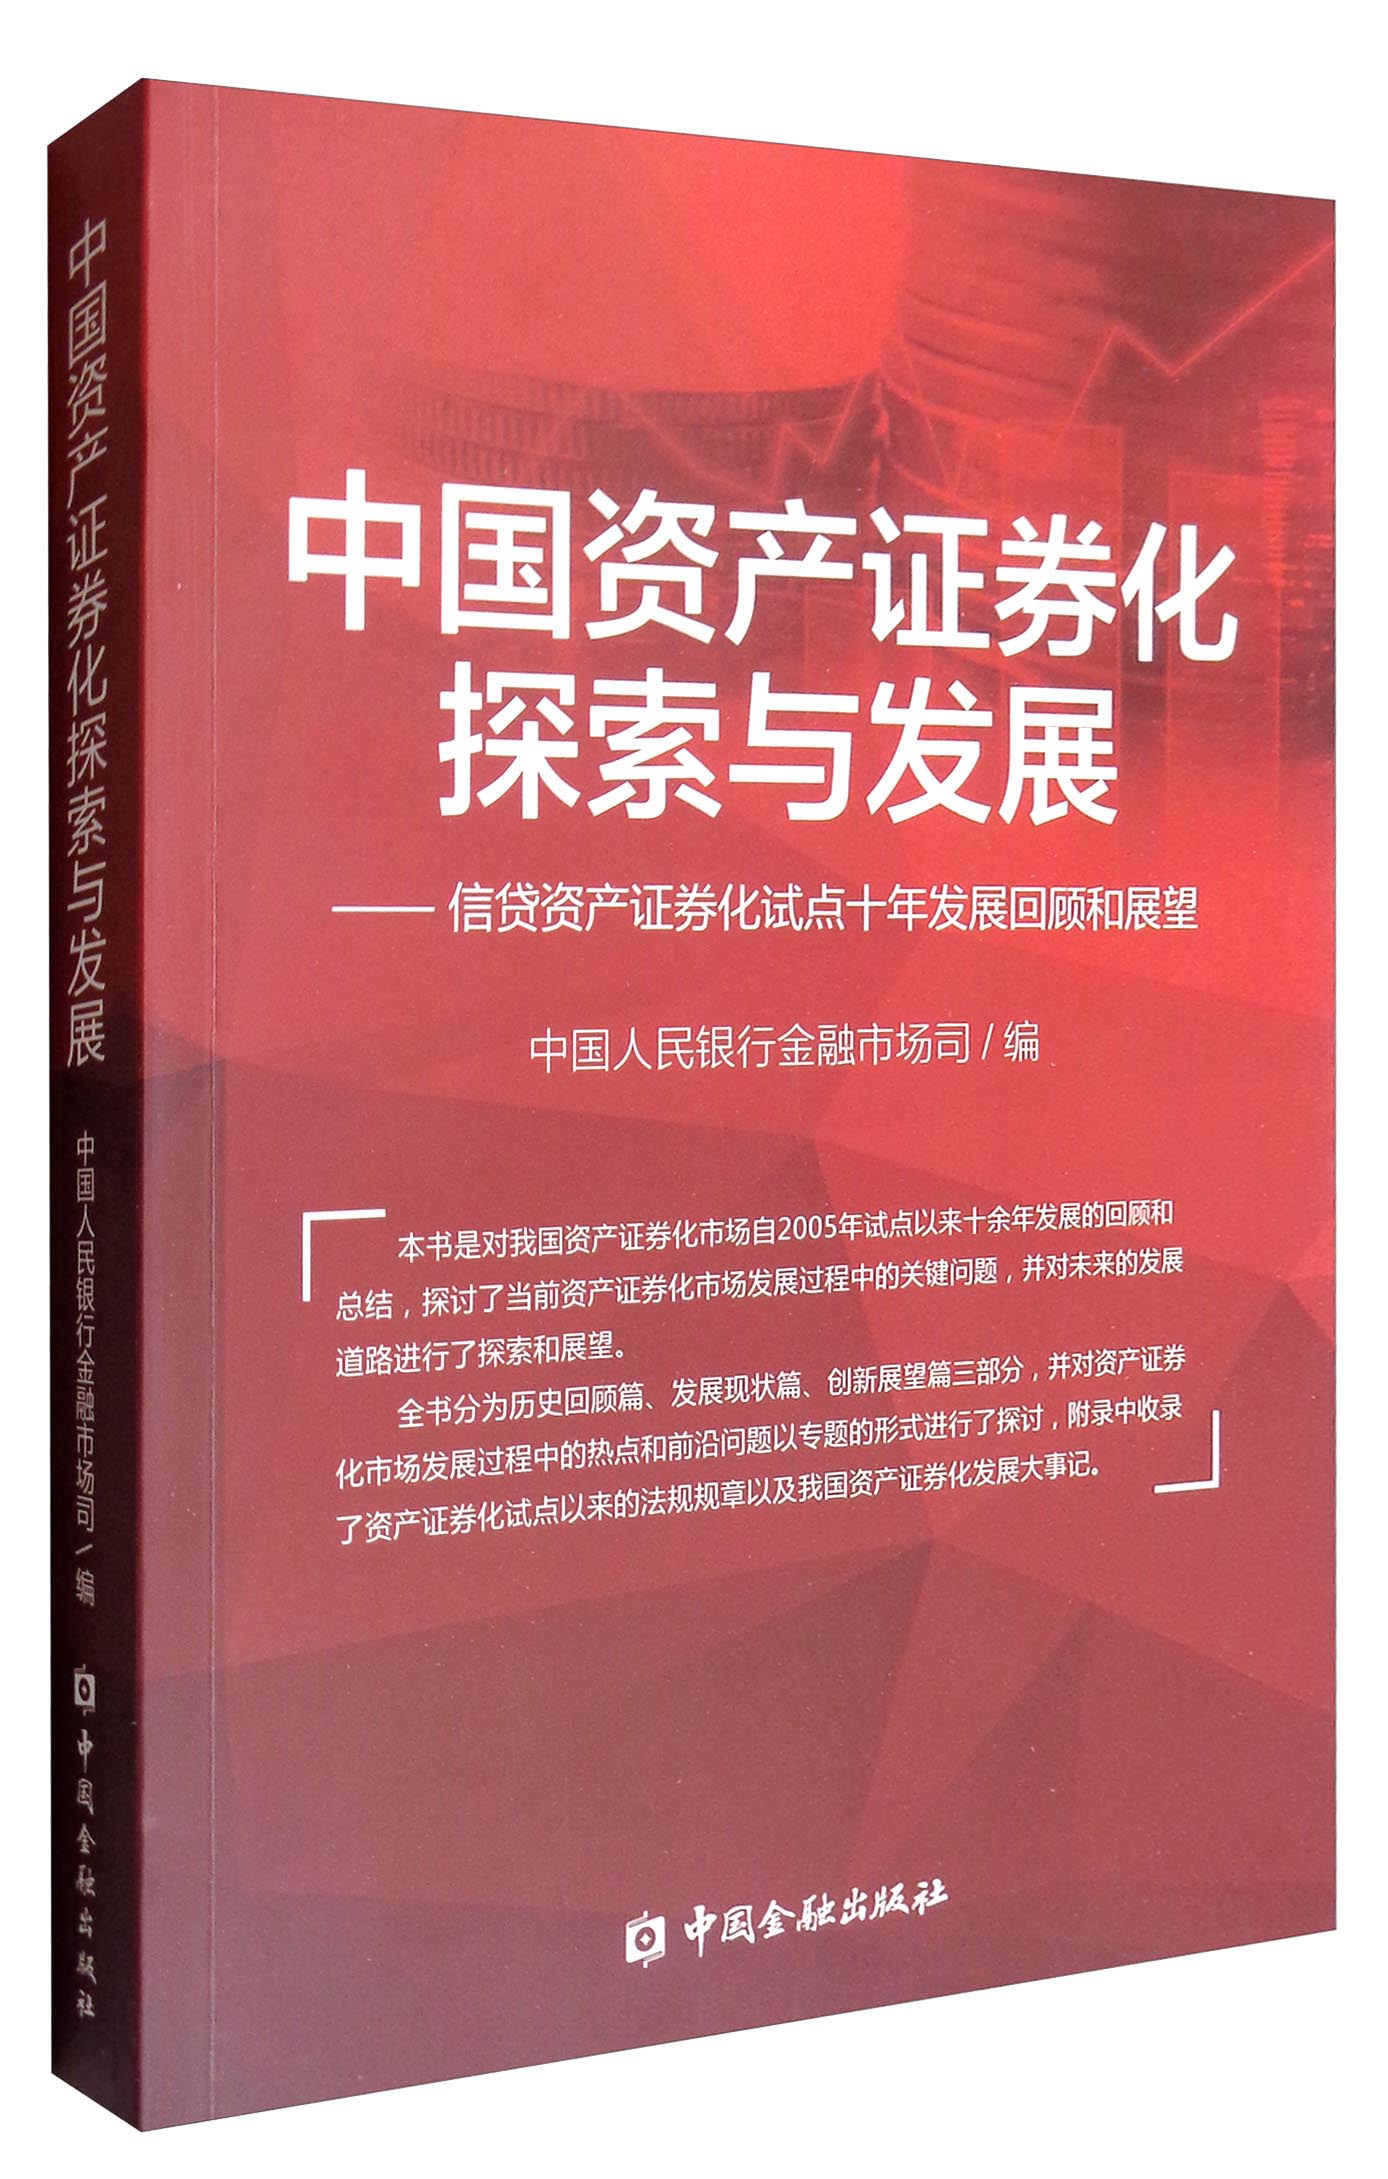 中国资产证券化探索与发展：信贷资产证券化试点十年发展回顾和展望 mobi格式下载